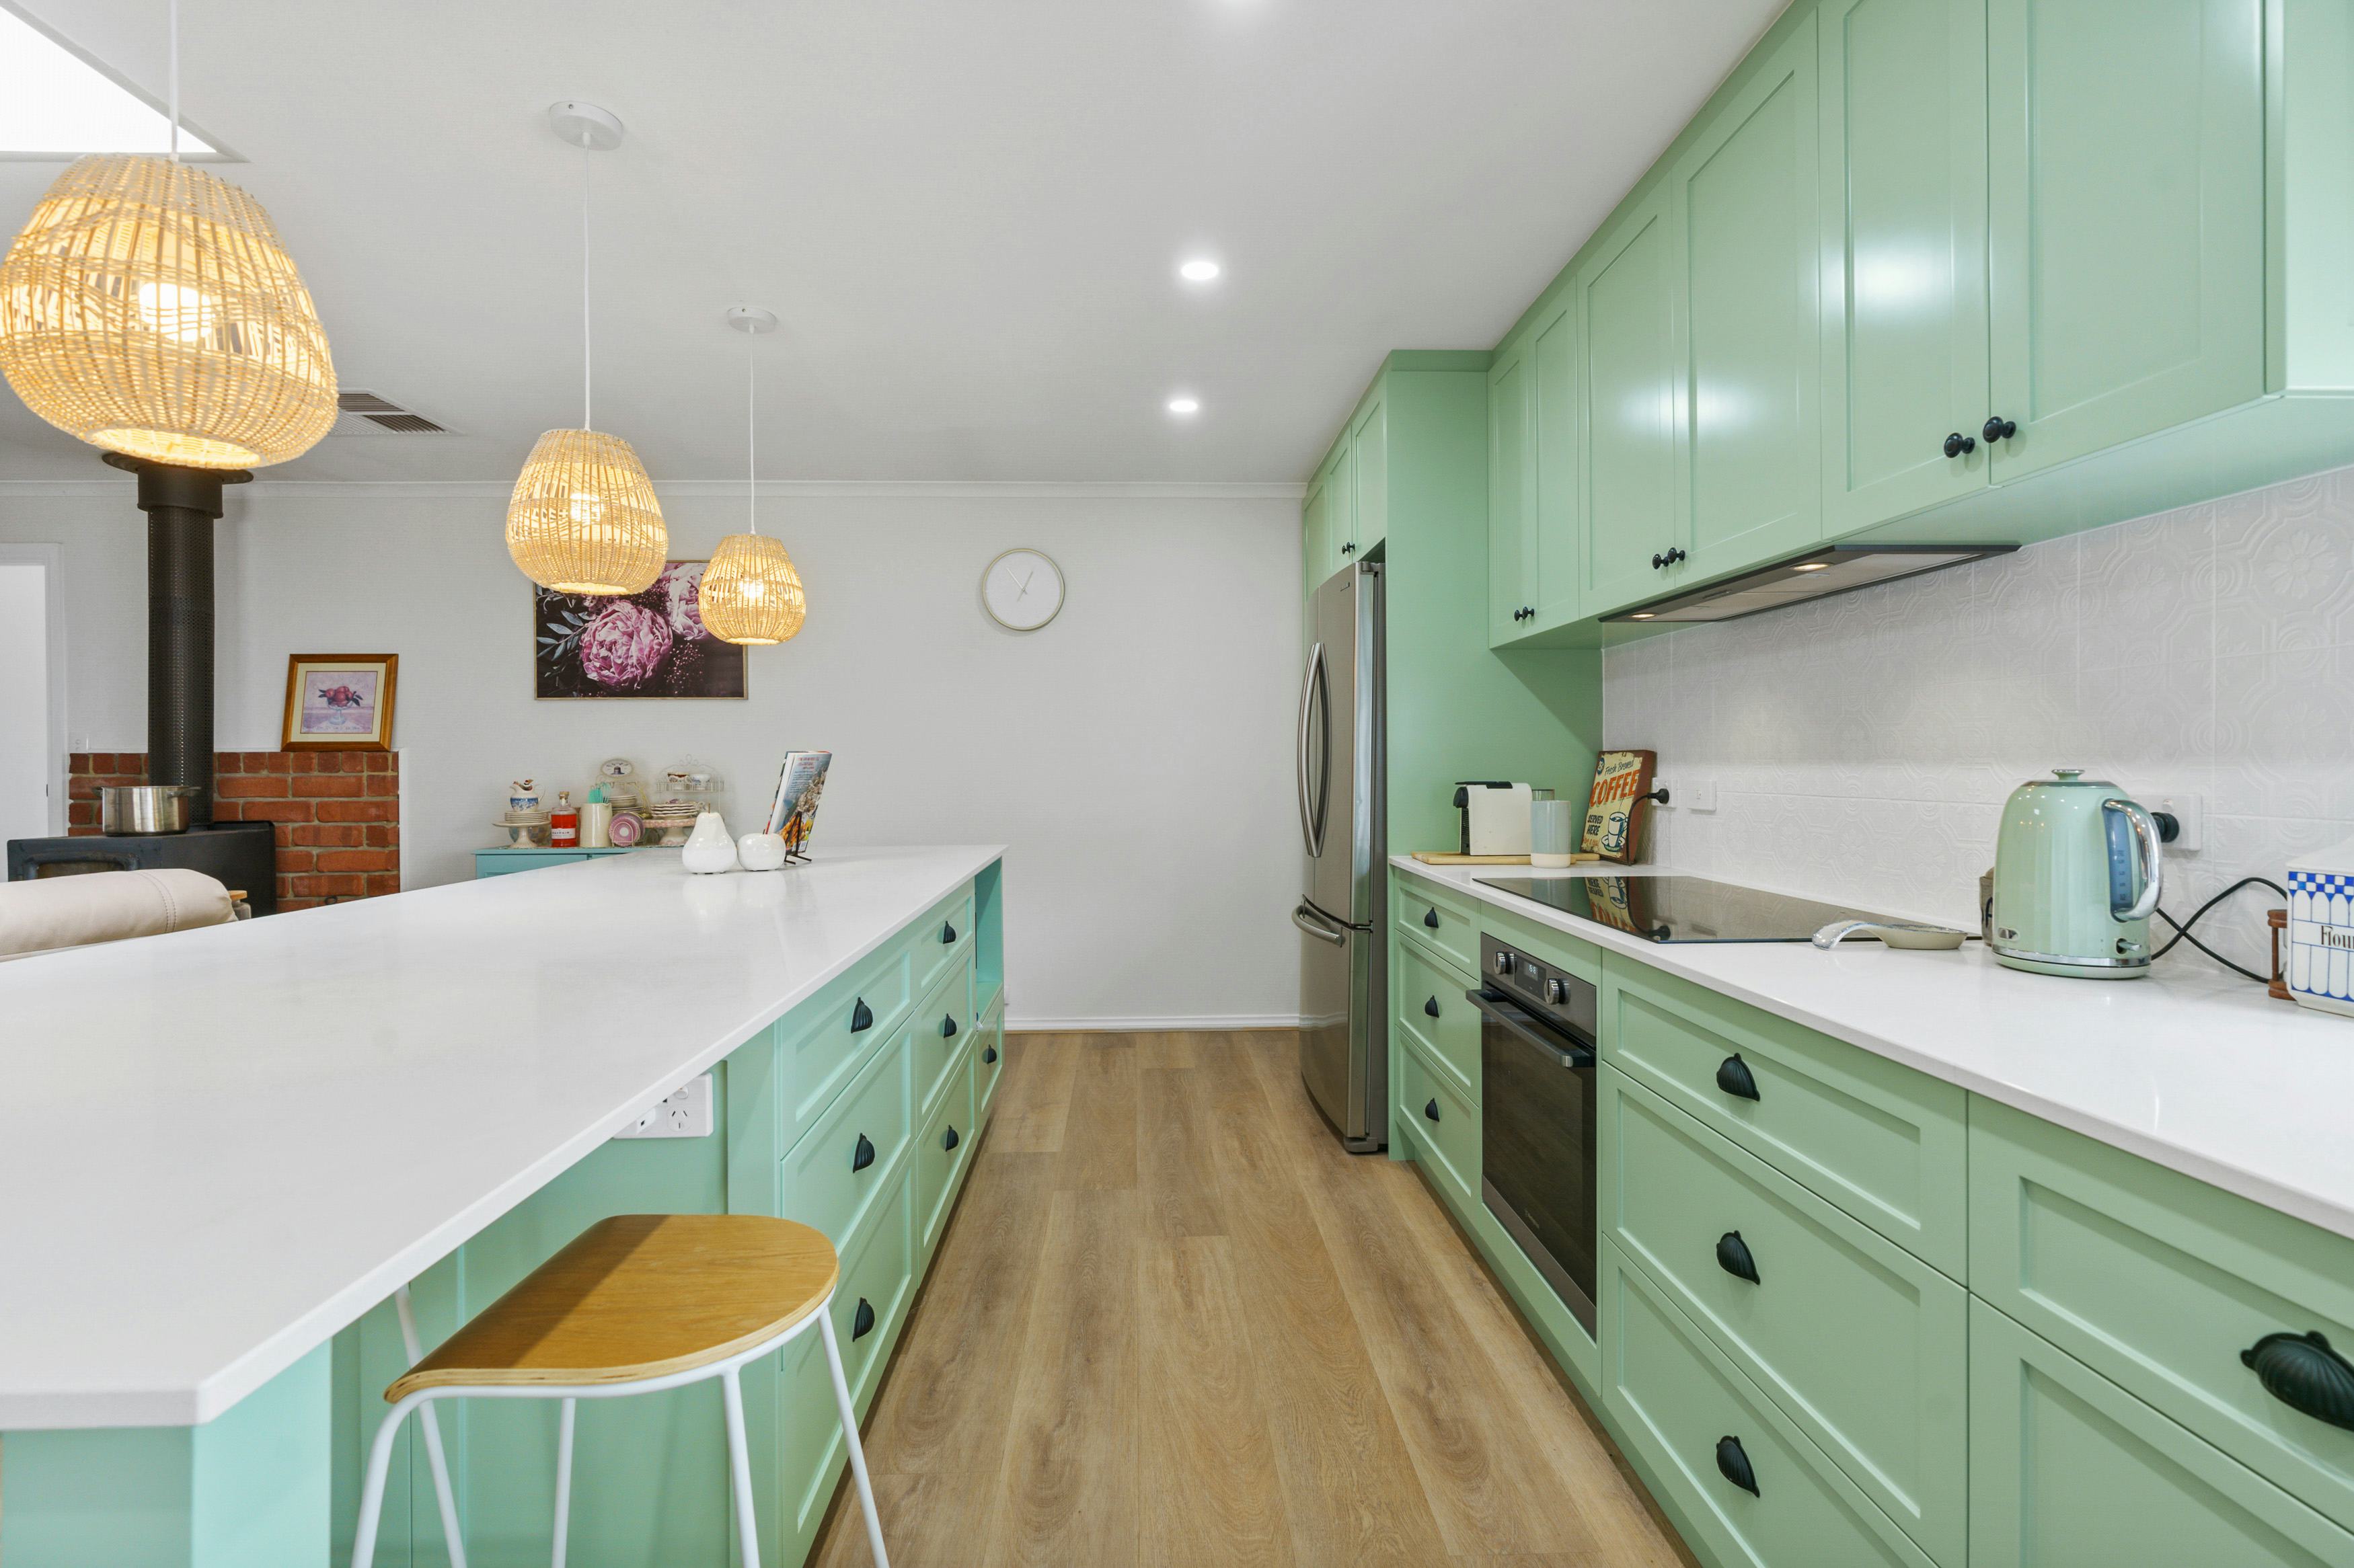 10 Minty Fresh Kitchens  Contemporary kitchen cabinets, Mint kitchen, Interior  design kitchen